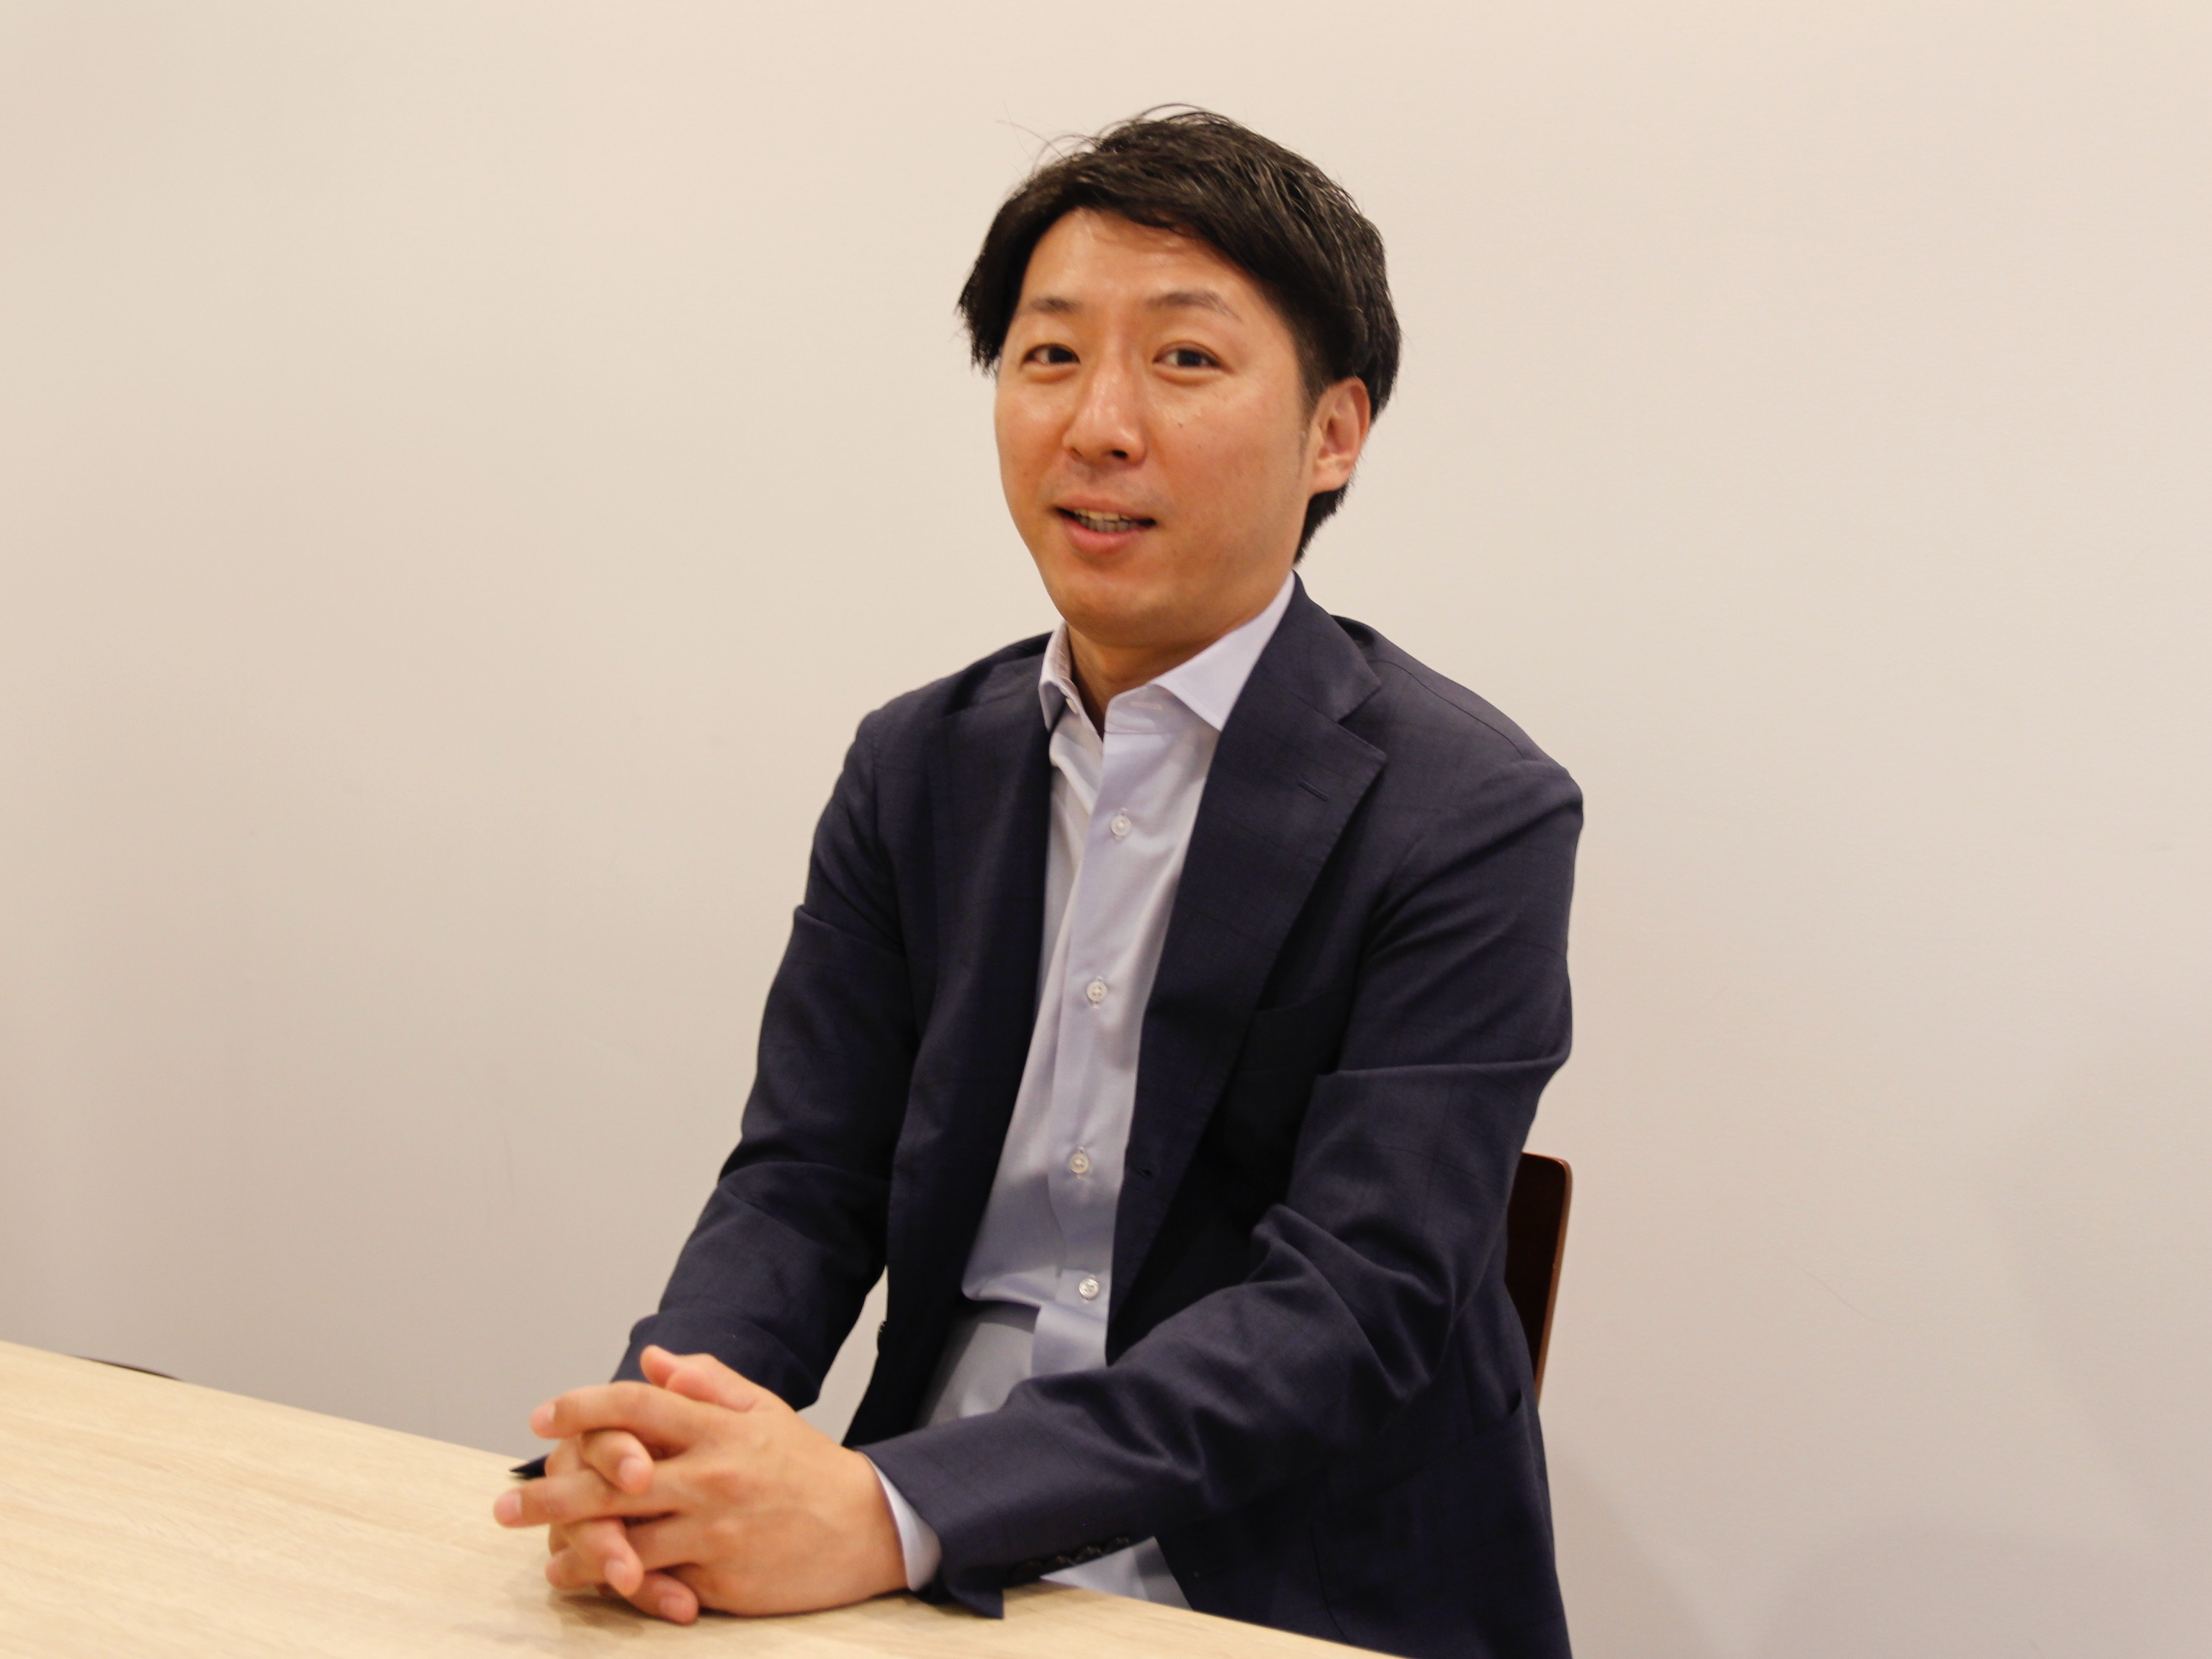 代表取締役　森田 正孝氏
自身もエンジニアとして長年最前線で活躍しており、その経験を経営にも存分に生かしている。